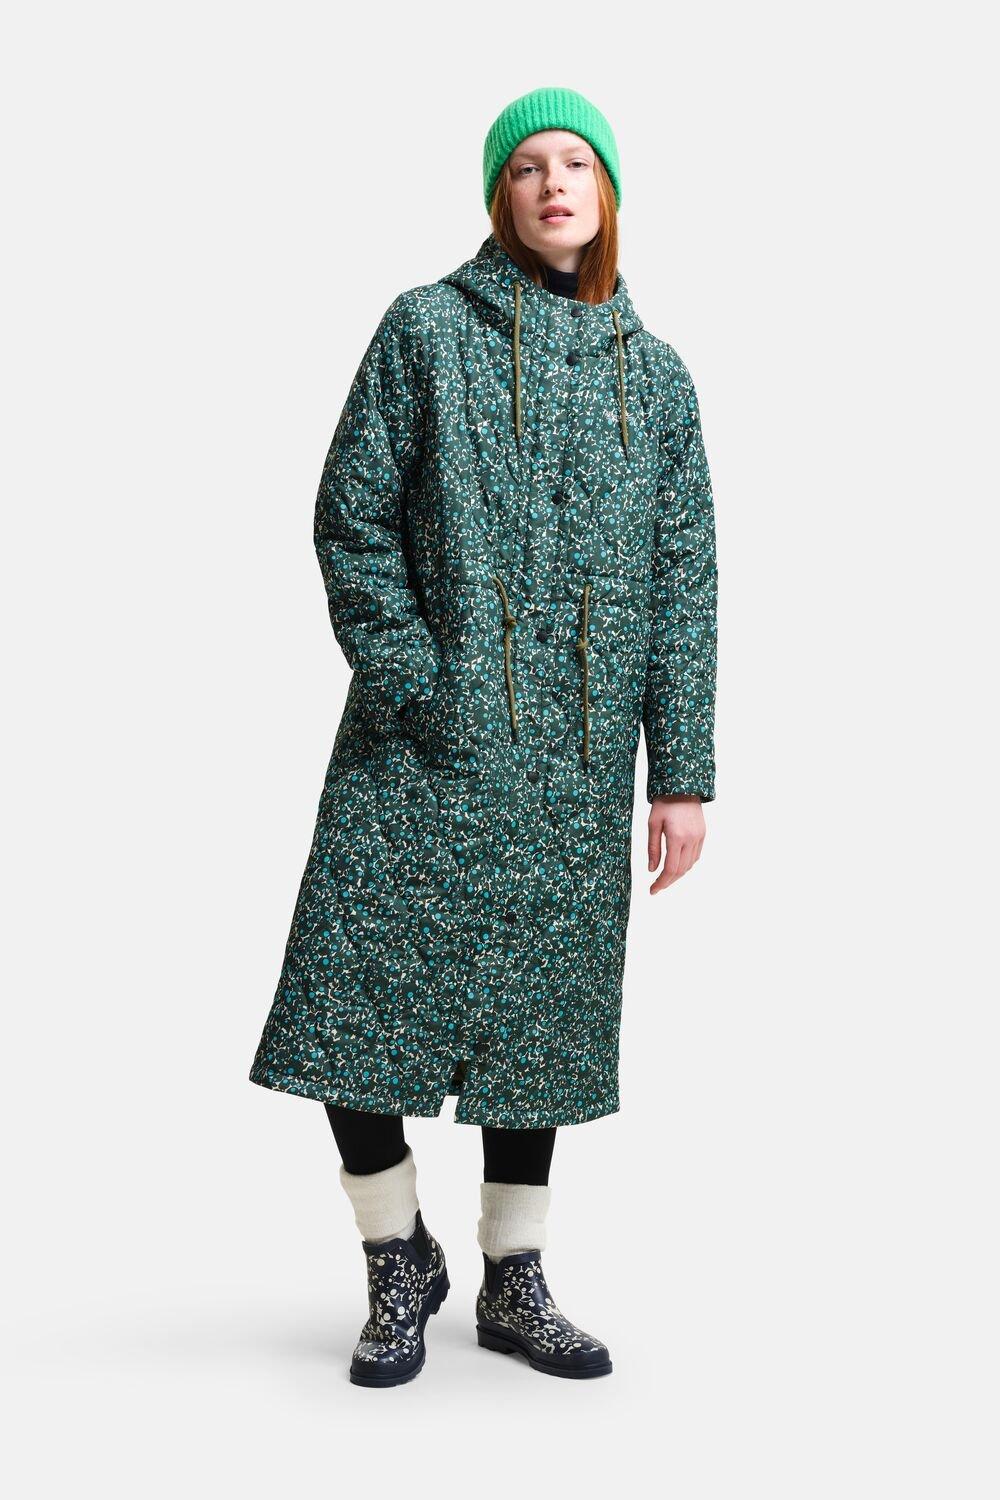 Удлиненная стеганая куртка Orla Kiely Regatta, зеленый женское кожаное пальто средней длины свободное облегающее универсальное пальто в стиле хип хоп зима 2023